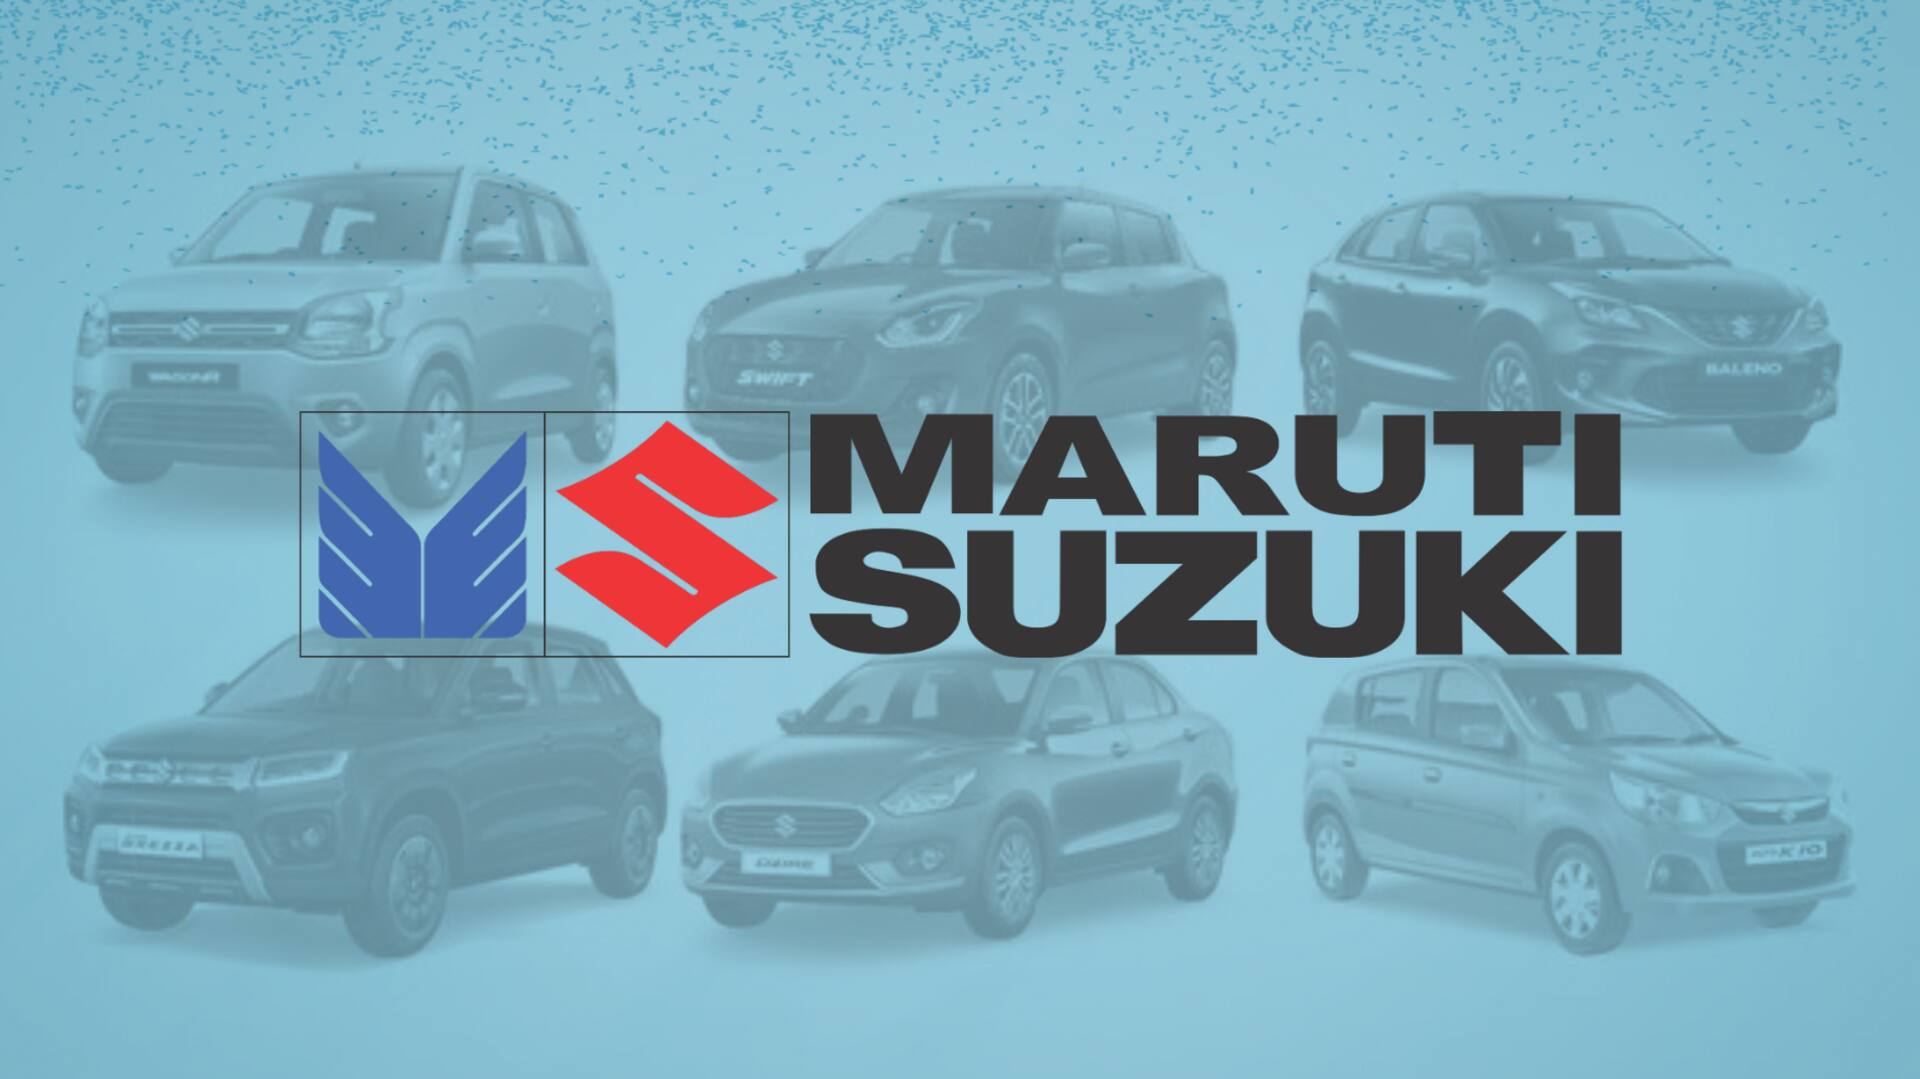 मारुति ने सुजुकी मोटर को शेयर आवंटन की दी मंजूरी, जानिए कितनी है कीमत 